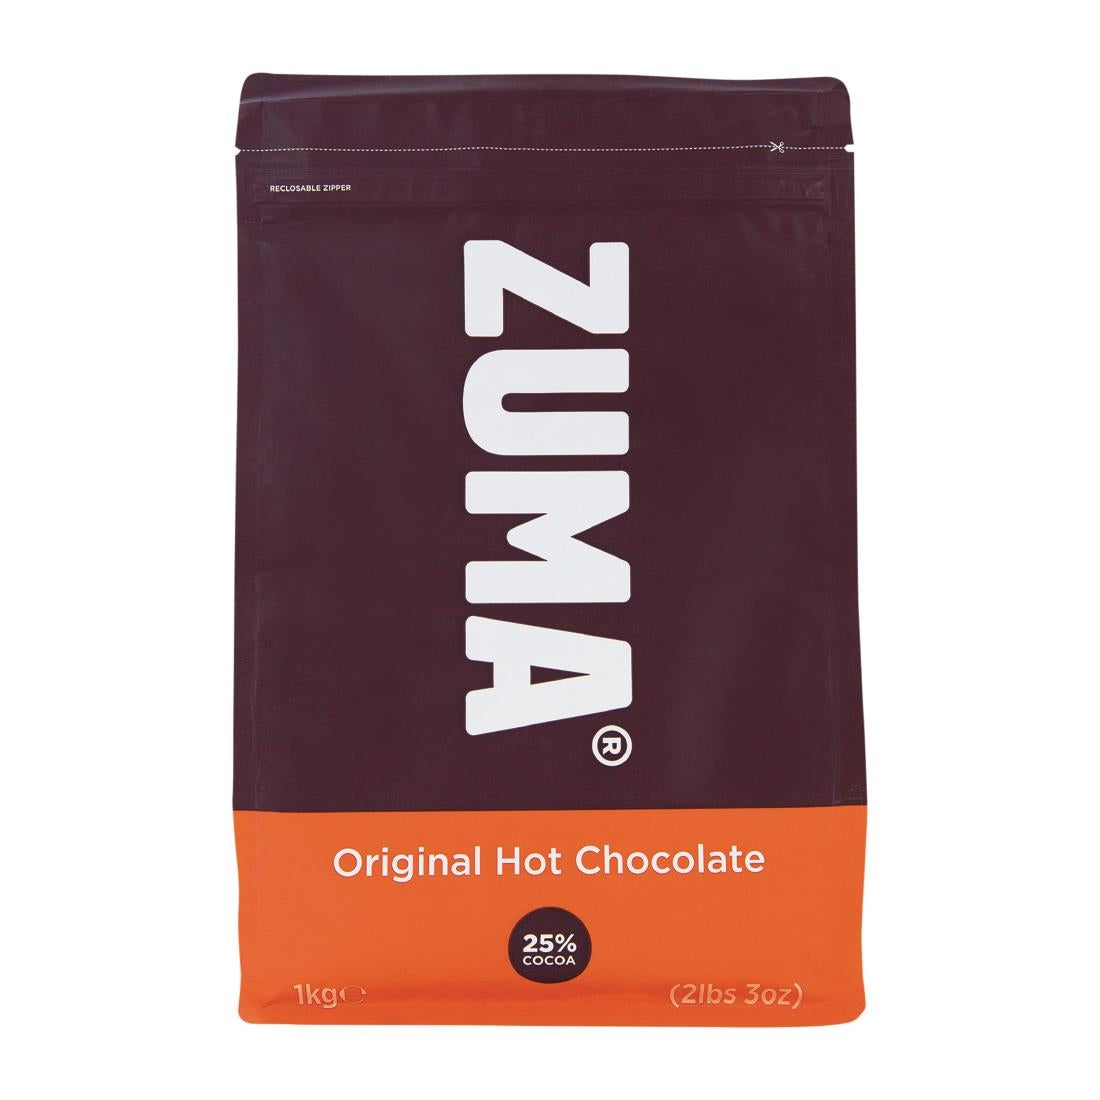 DX615 Zuma Original Hot Chocolate (25% Cocoa) 1kg Bag